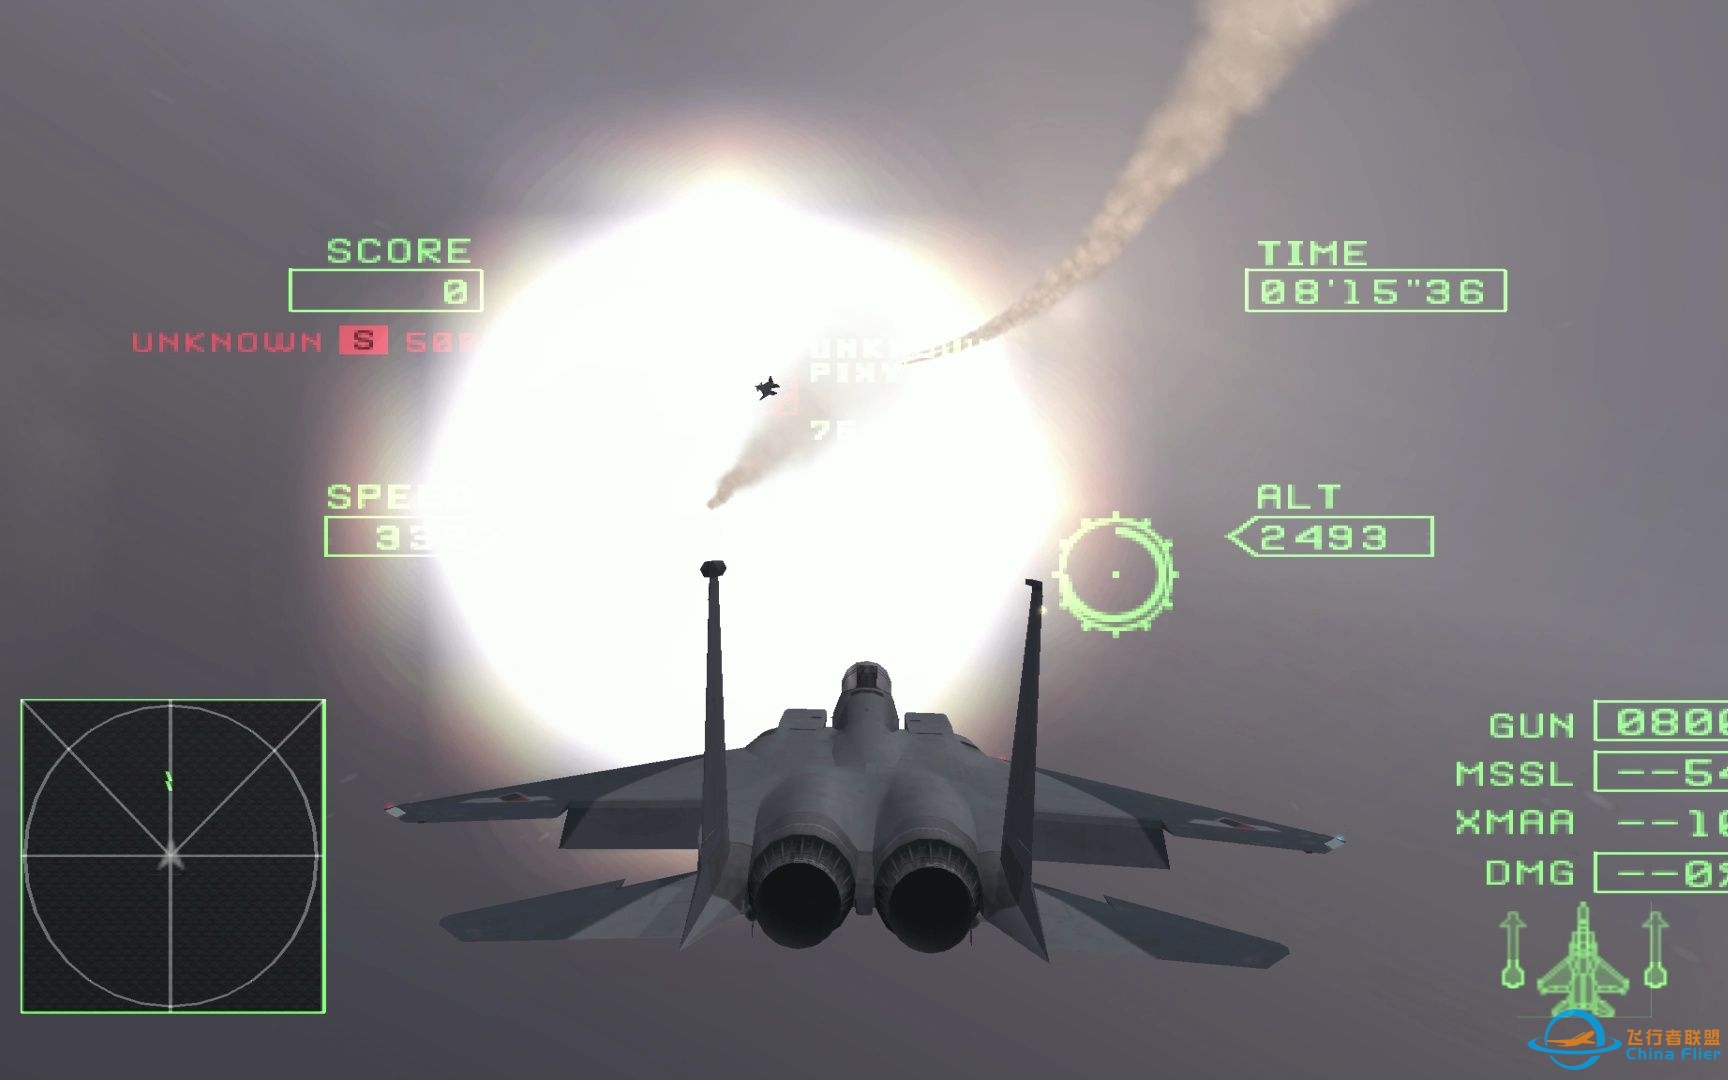 皇牌空战0 4K超高清完美模拟 有云爆炸效果正常 支持皇牌空战5-8973 